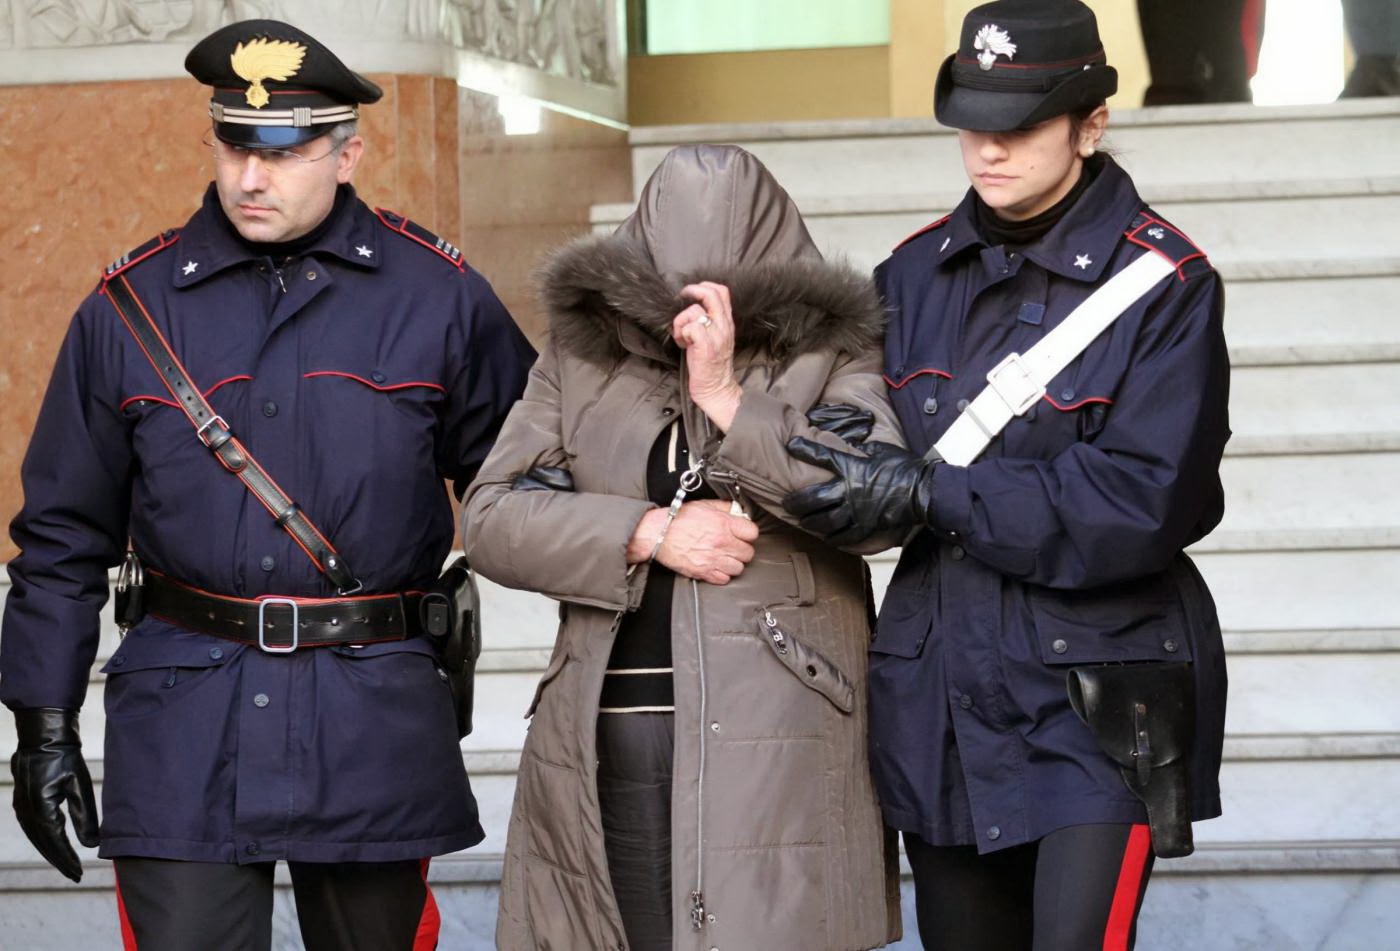 arresti-carabinieri-donna-001